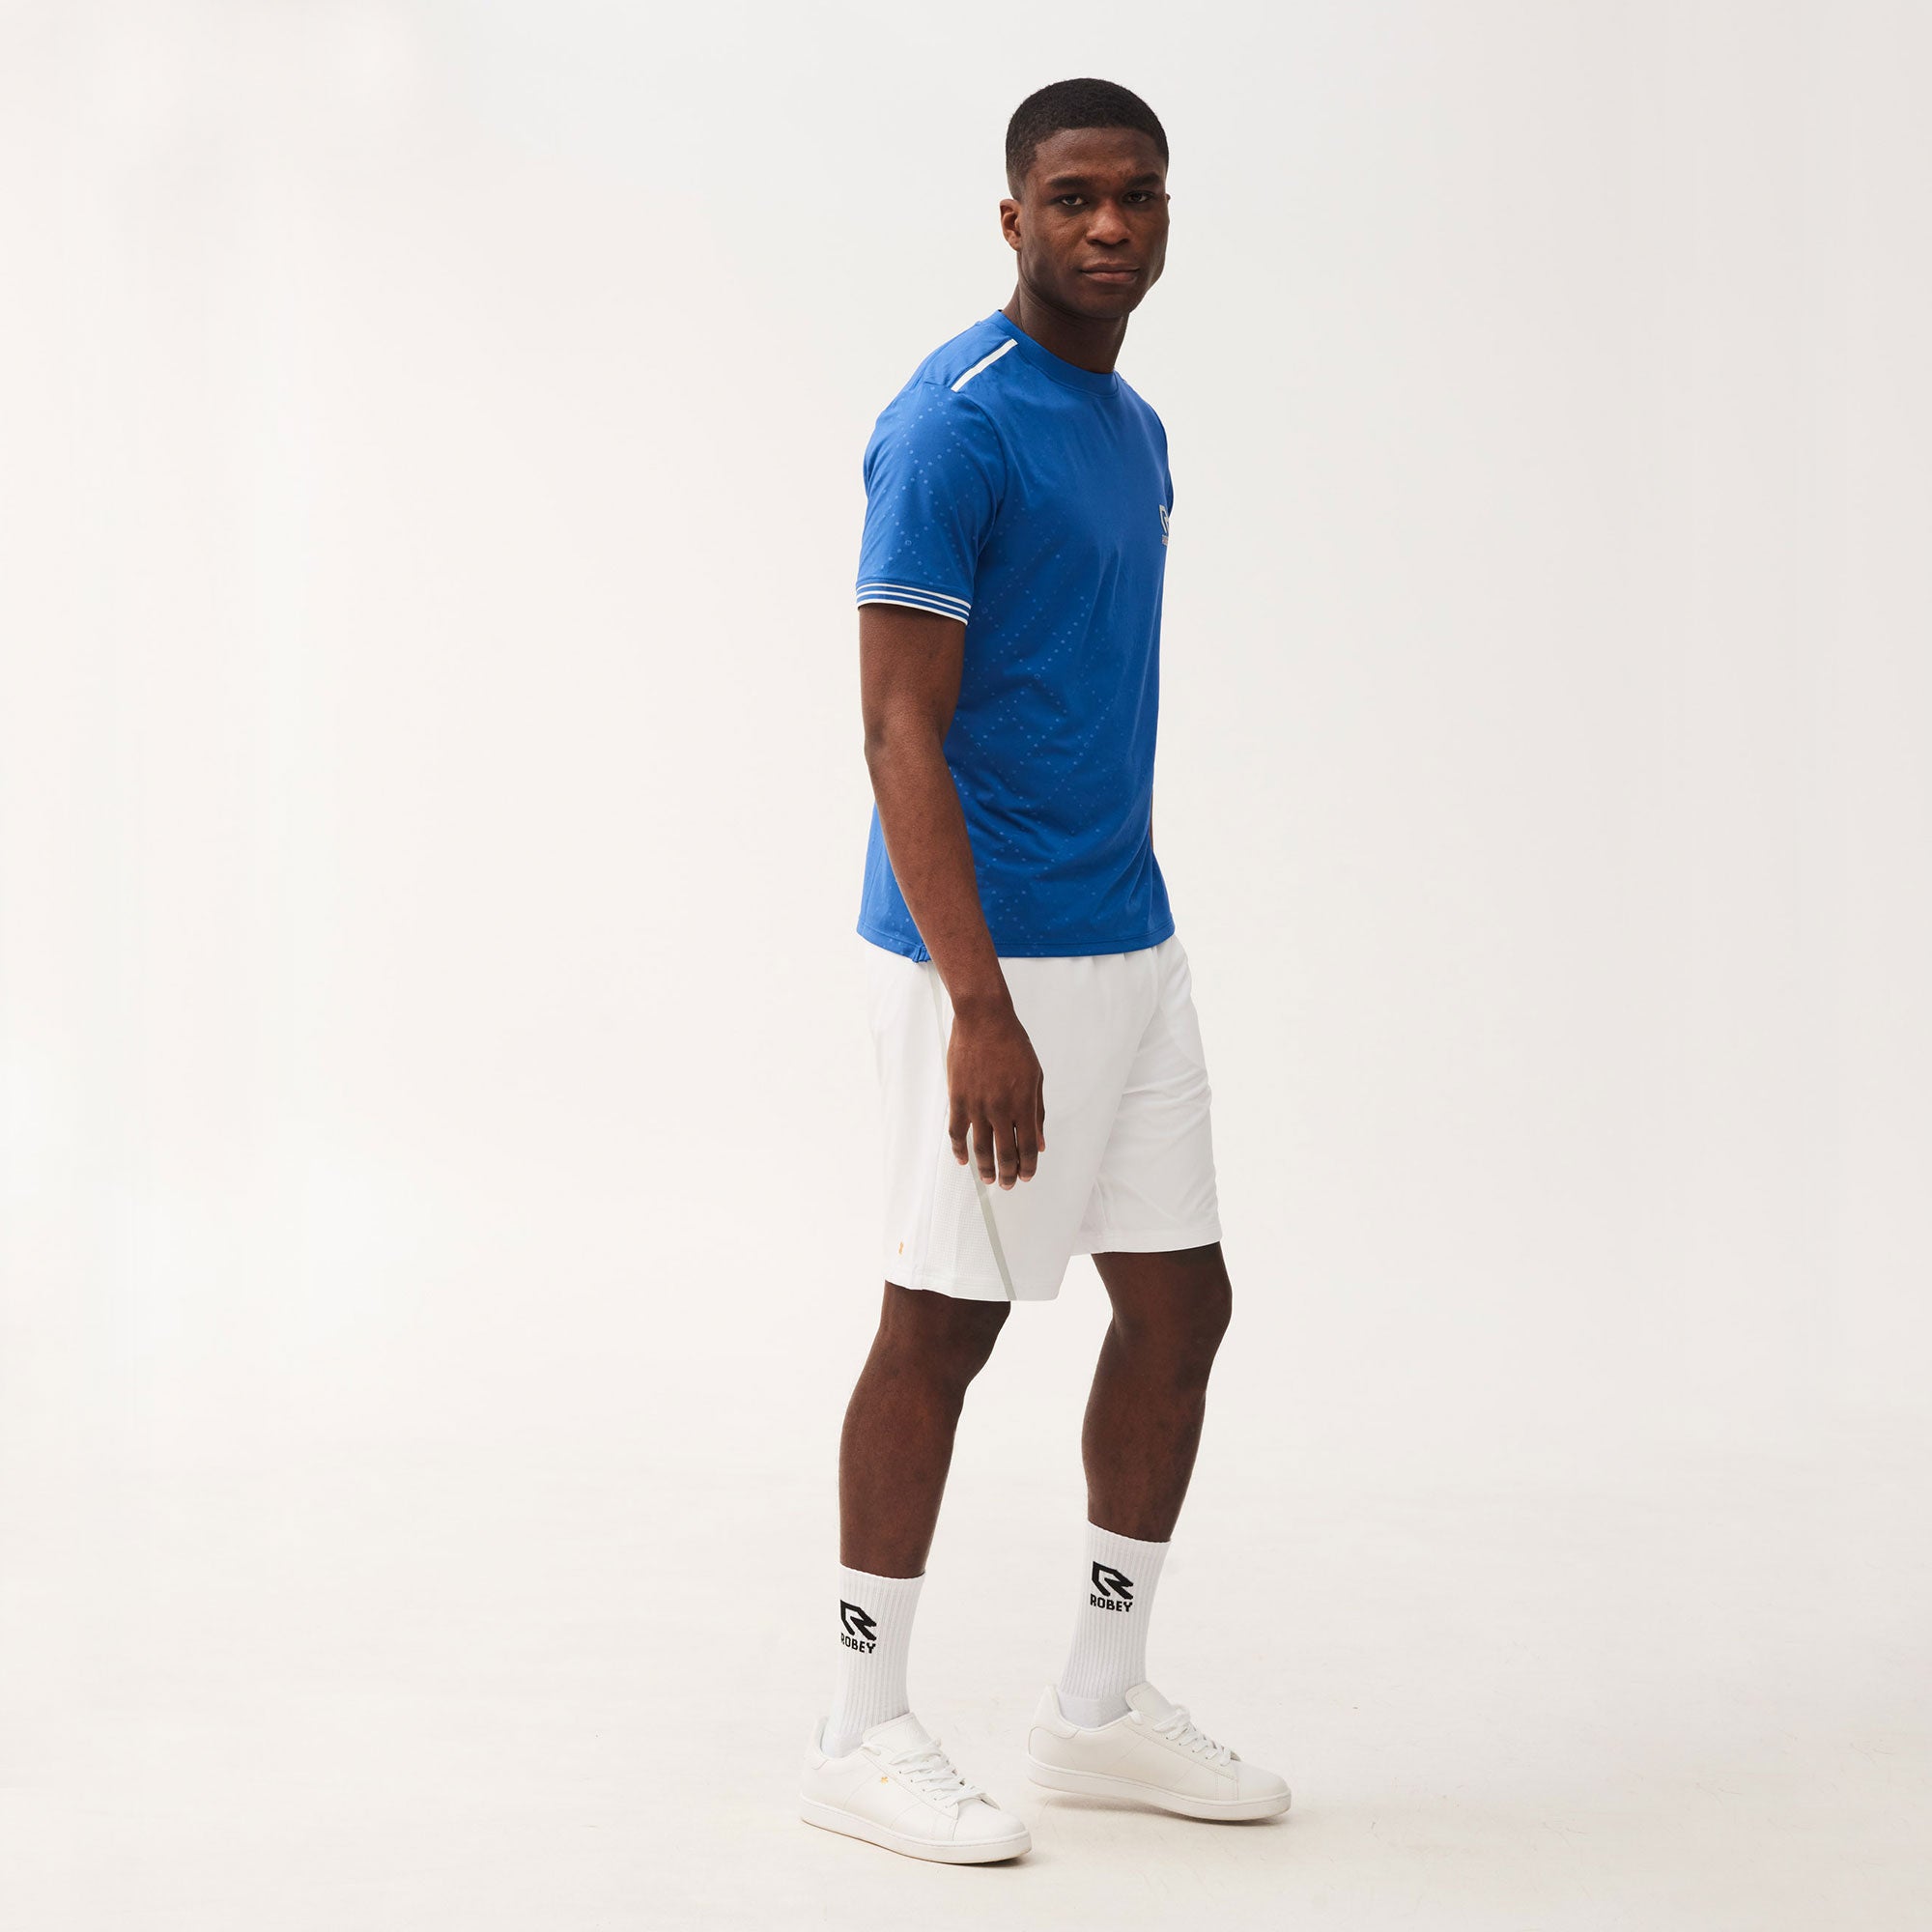 Robey Cross Men's Tennis Shirt Blue (4)